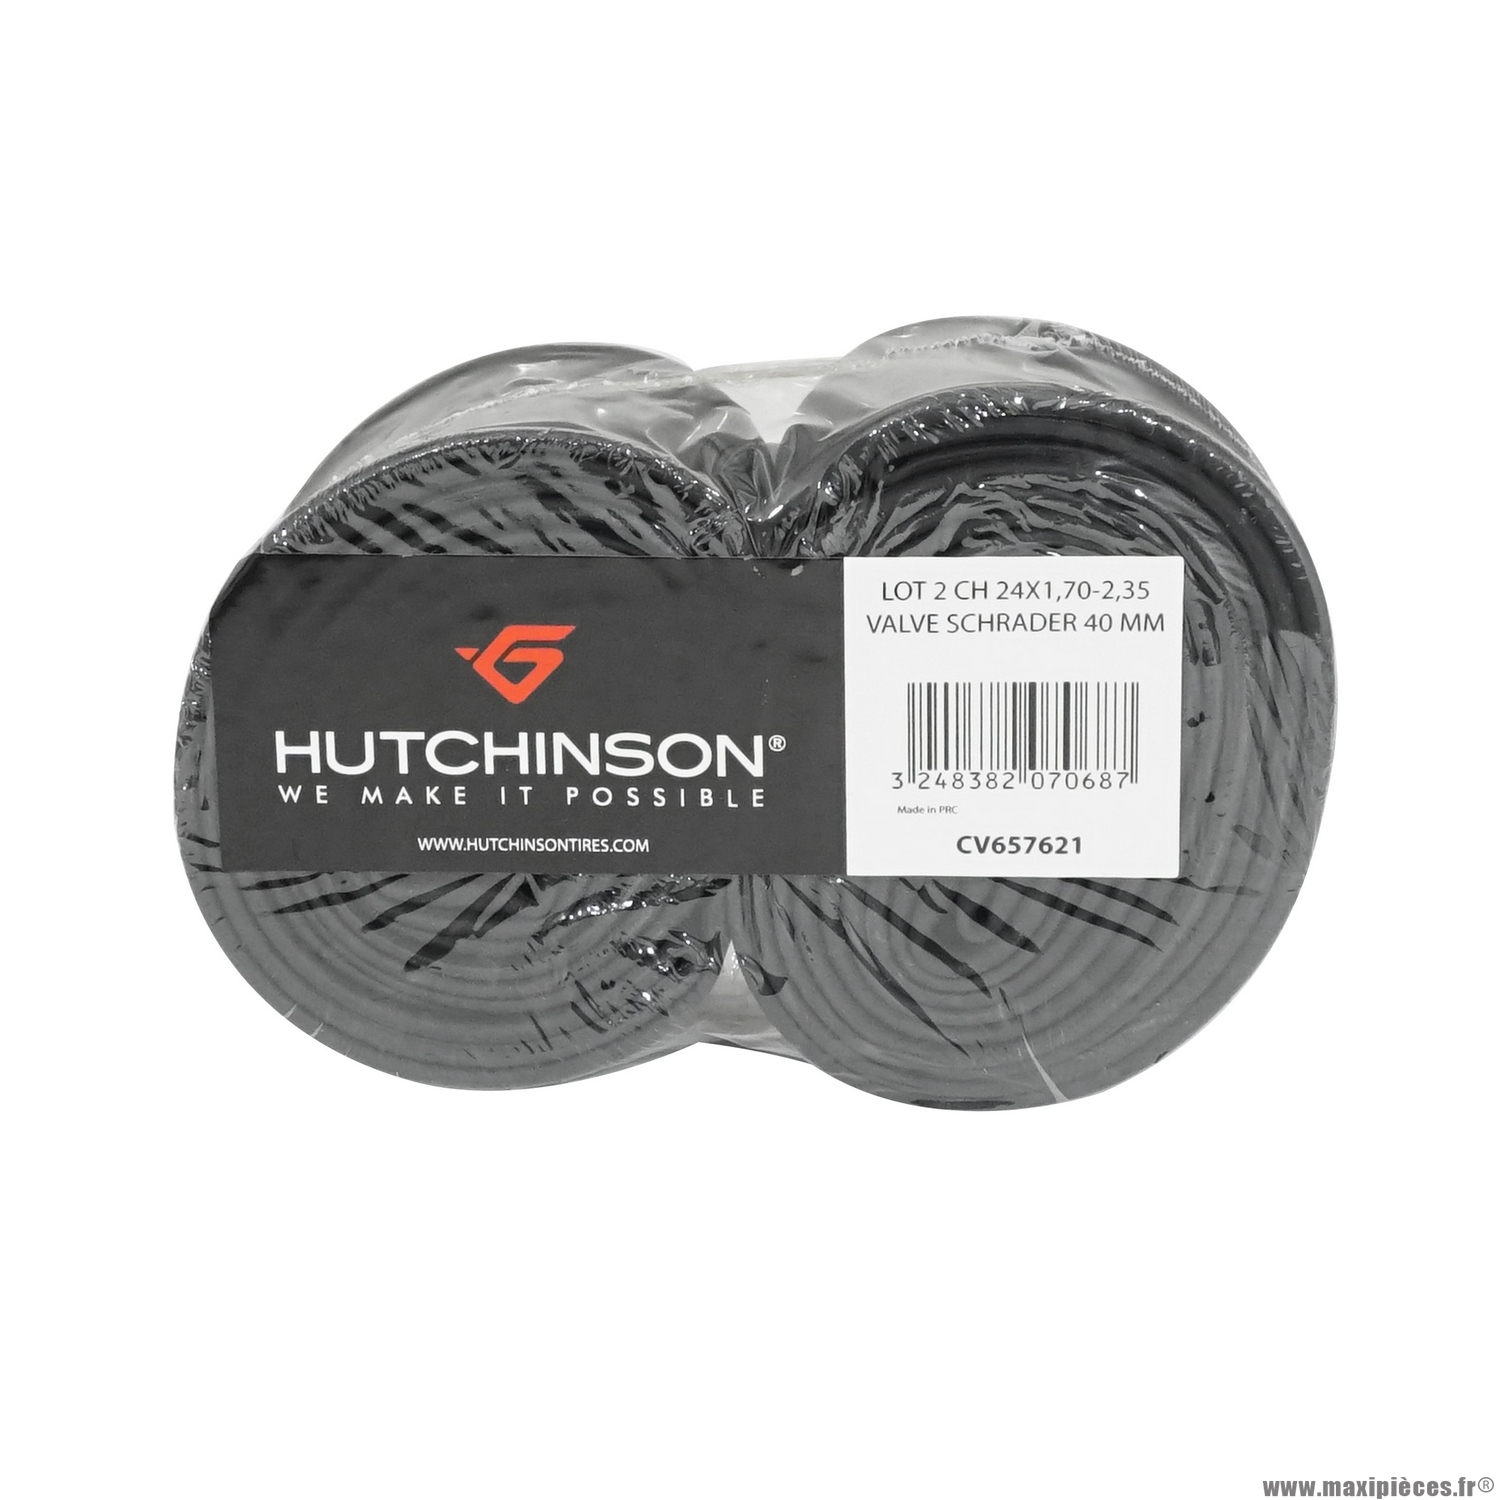 Cyclisme Hutchinson Chambre a air velo 350 x 28-42a hutchinson valve standard 35mm 73g 